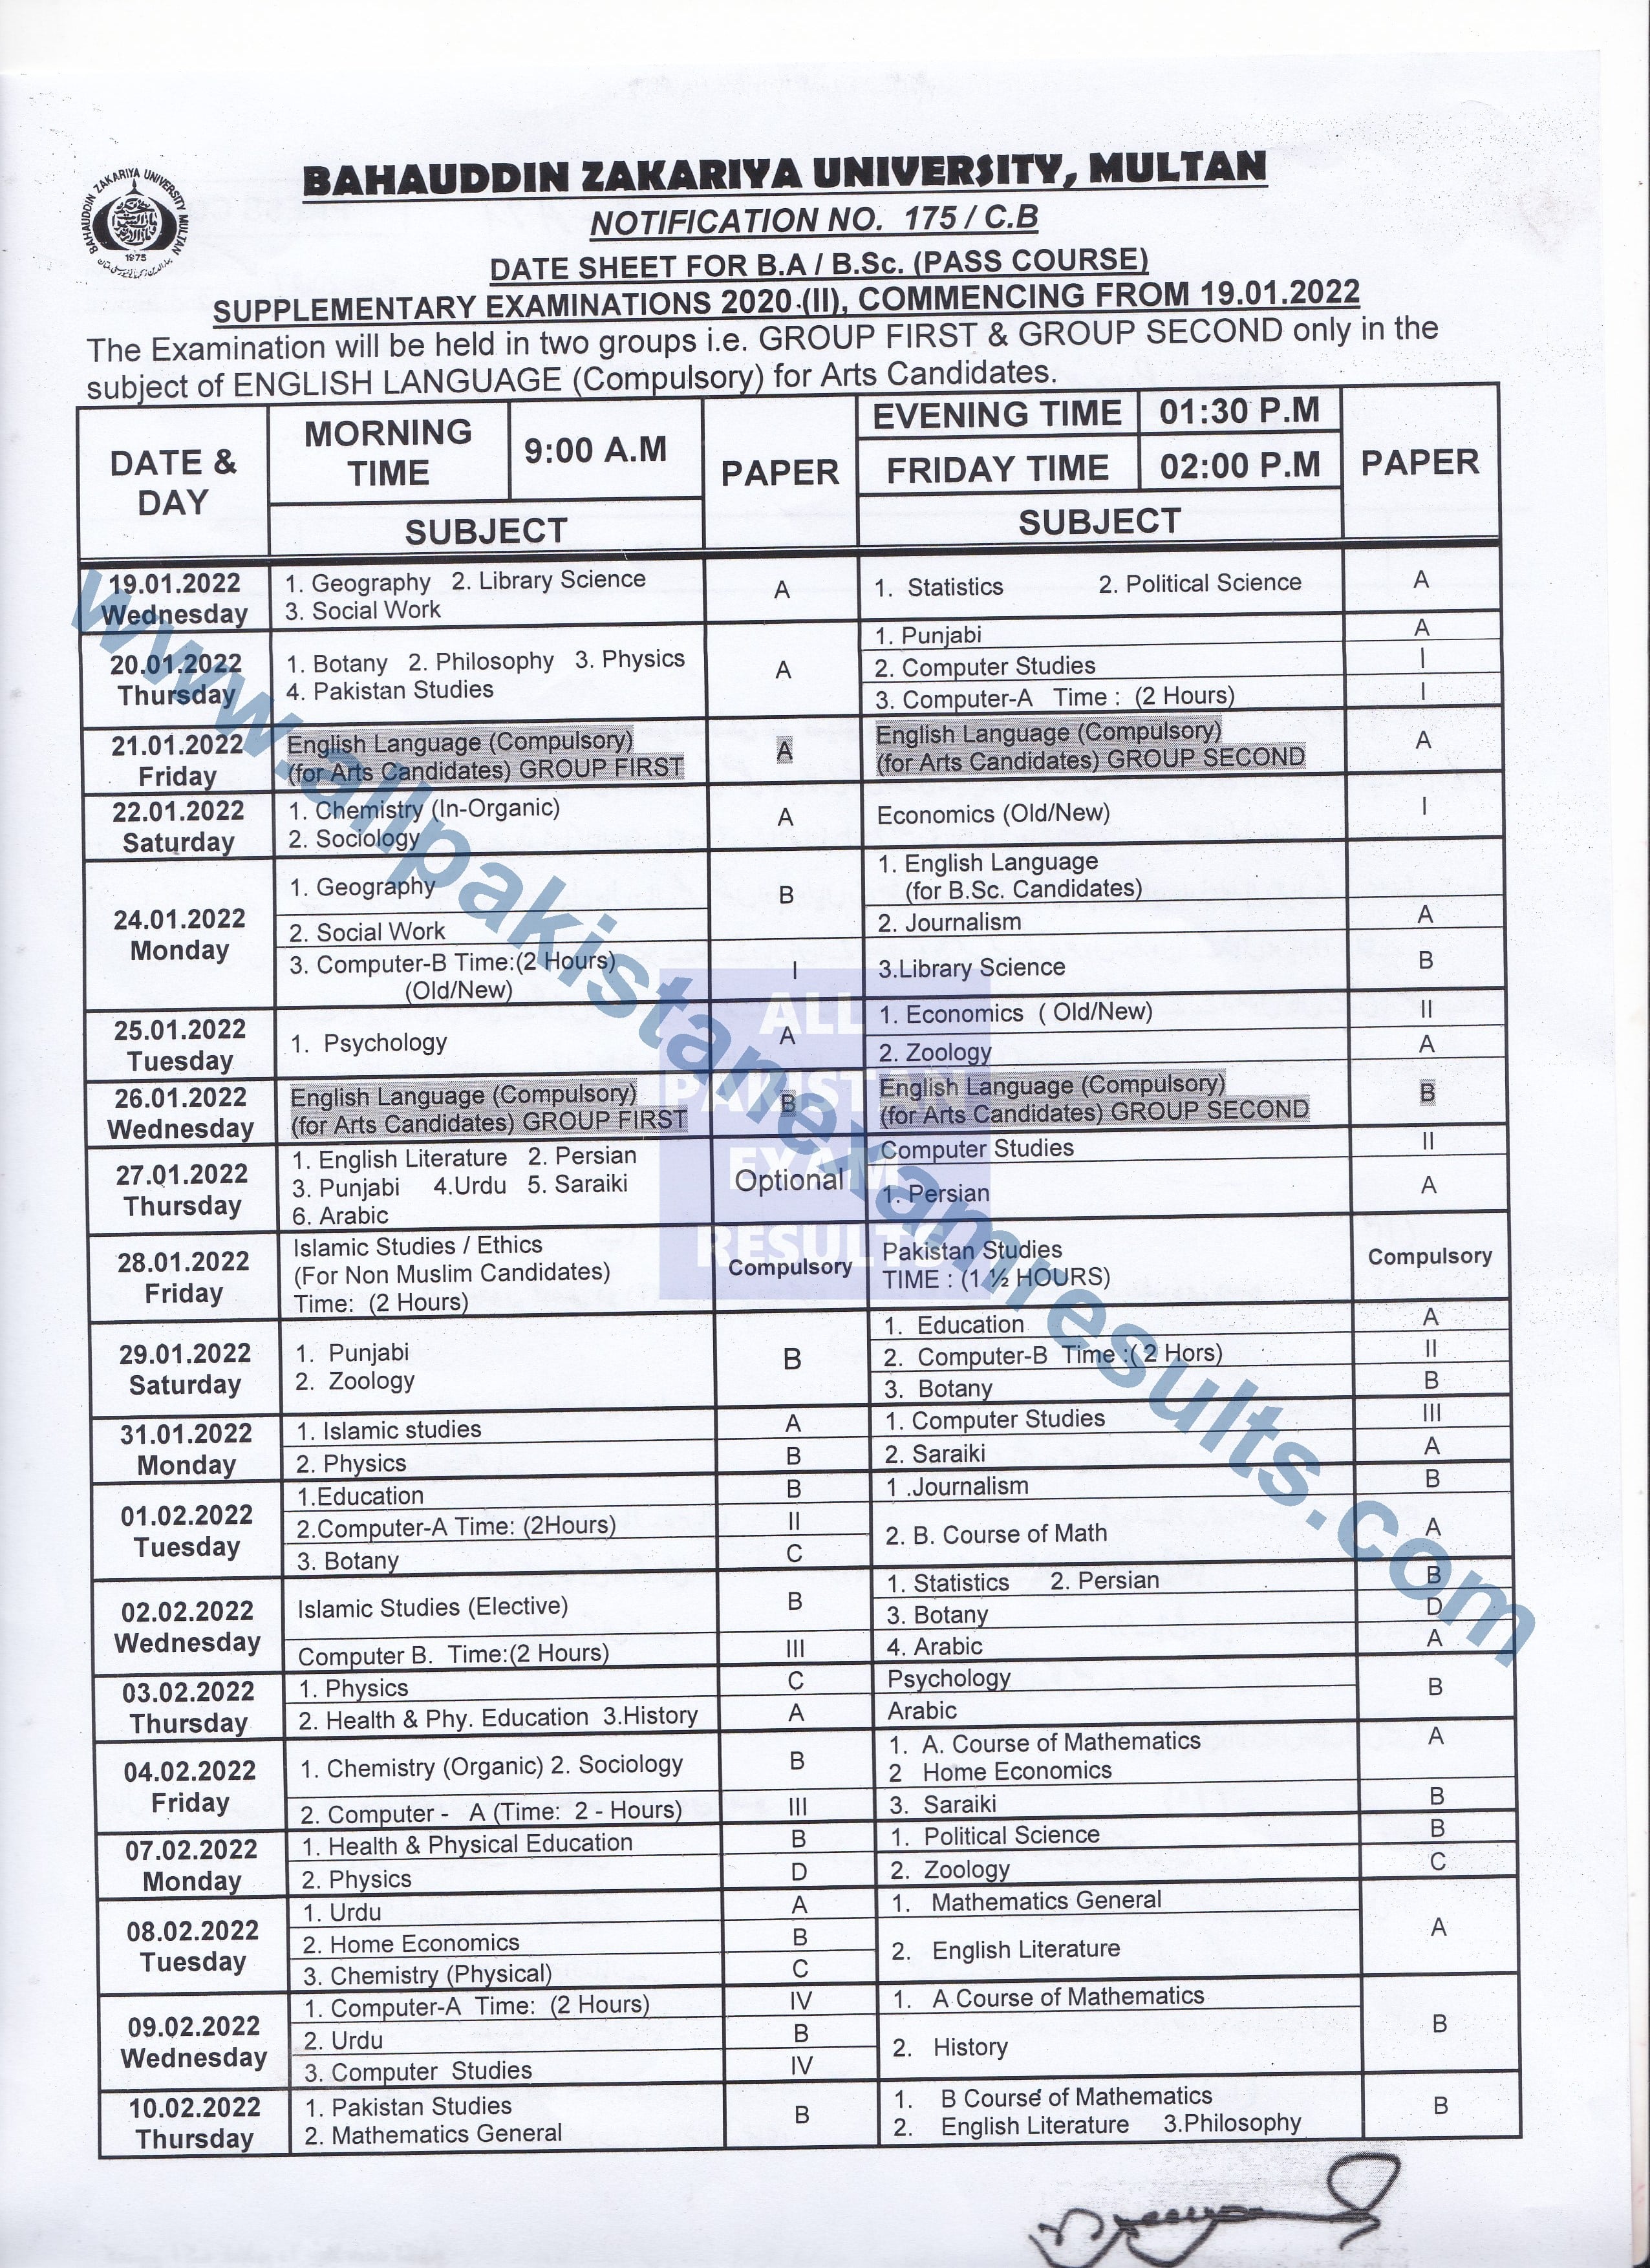 date sheet for ba bsc supplementary exam 2020 mzu multan